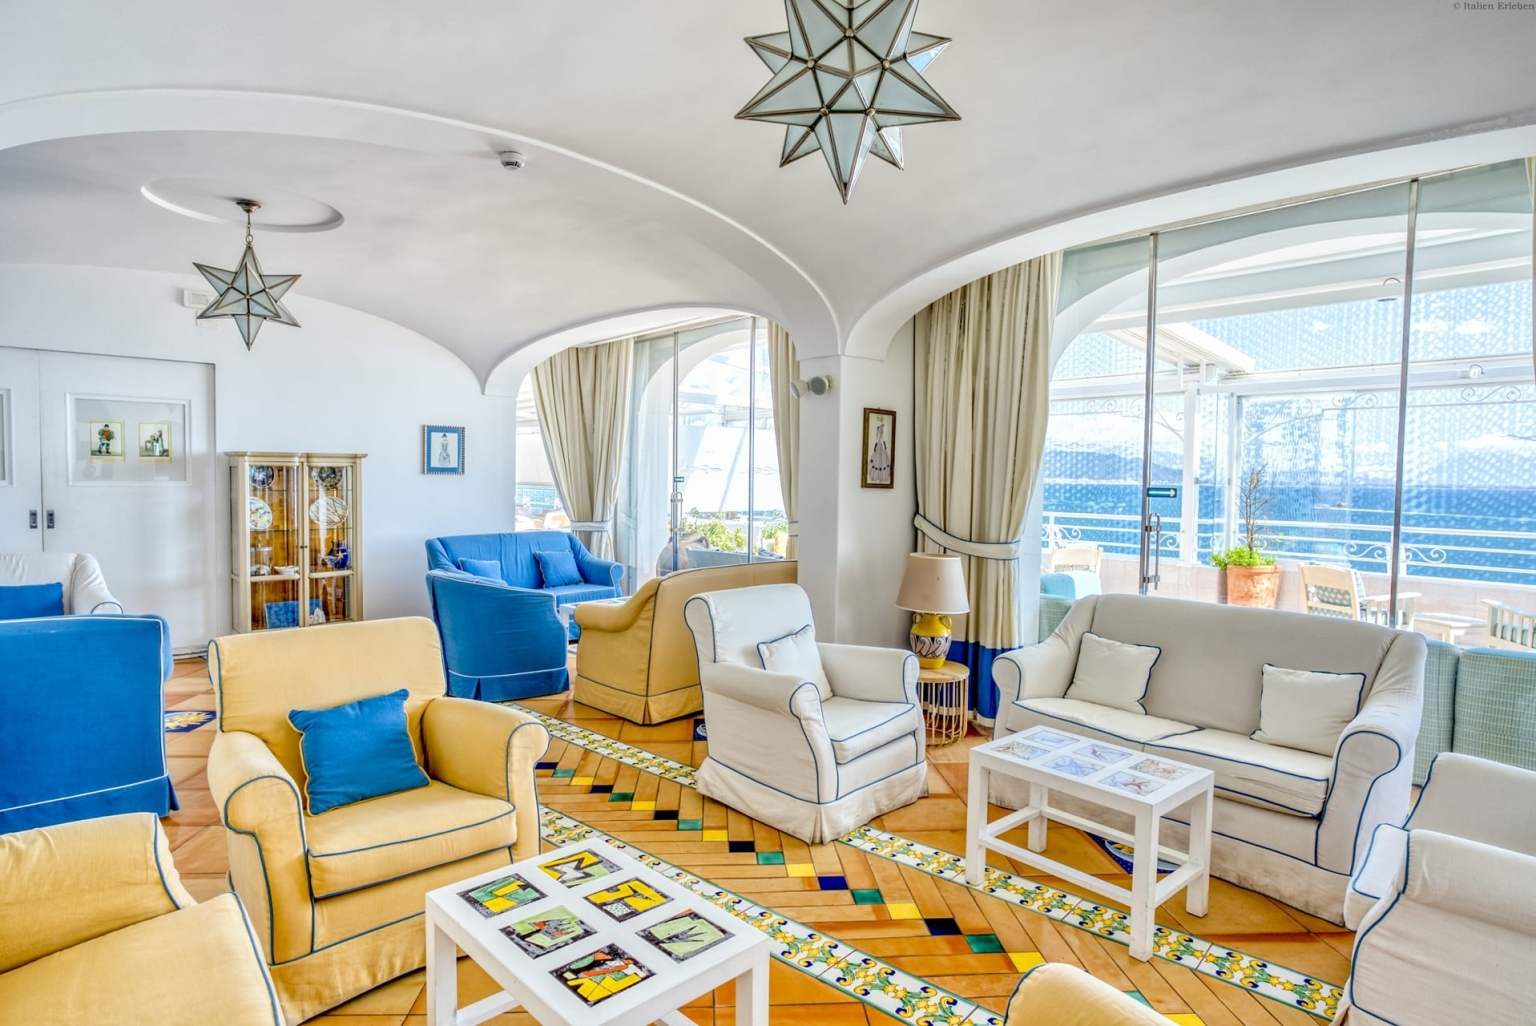 Kampanien Hotel Cetus Cetara Amalfiküste direkt am Meer Panoramalage Meerblick Lounge Hall